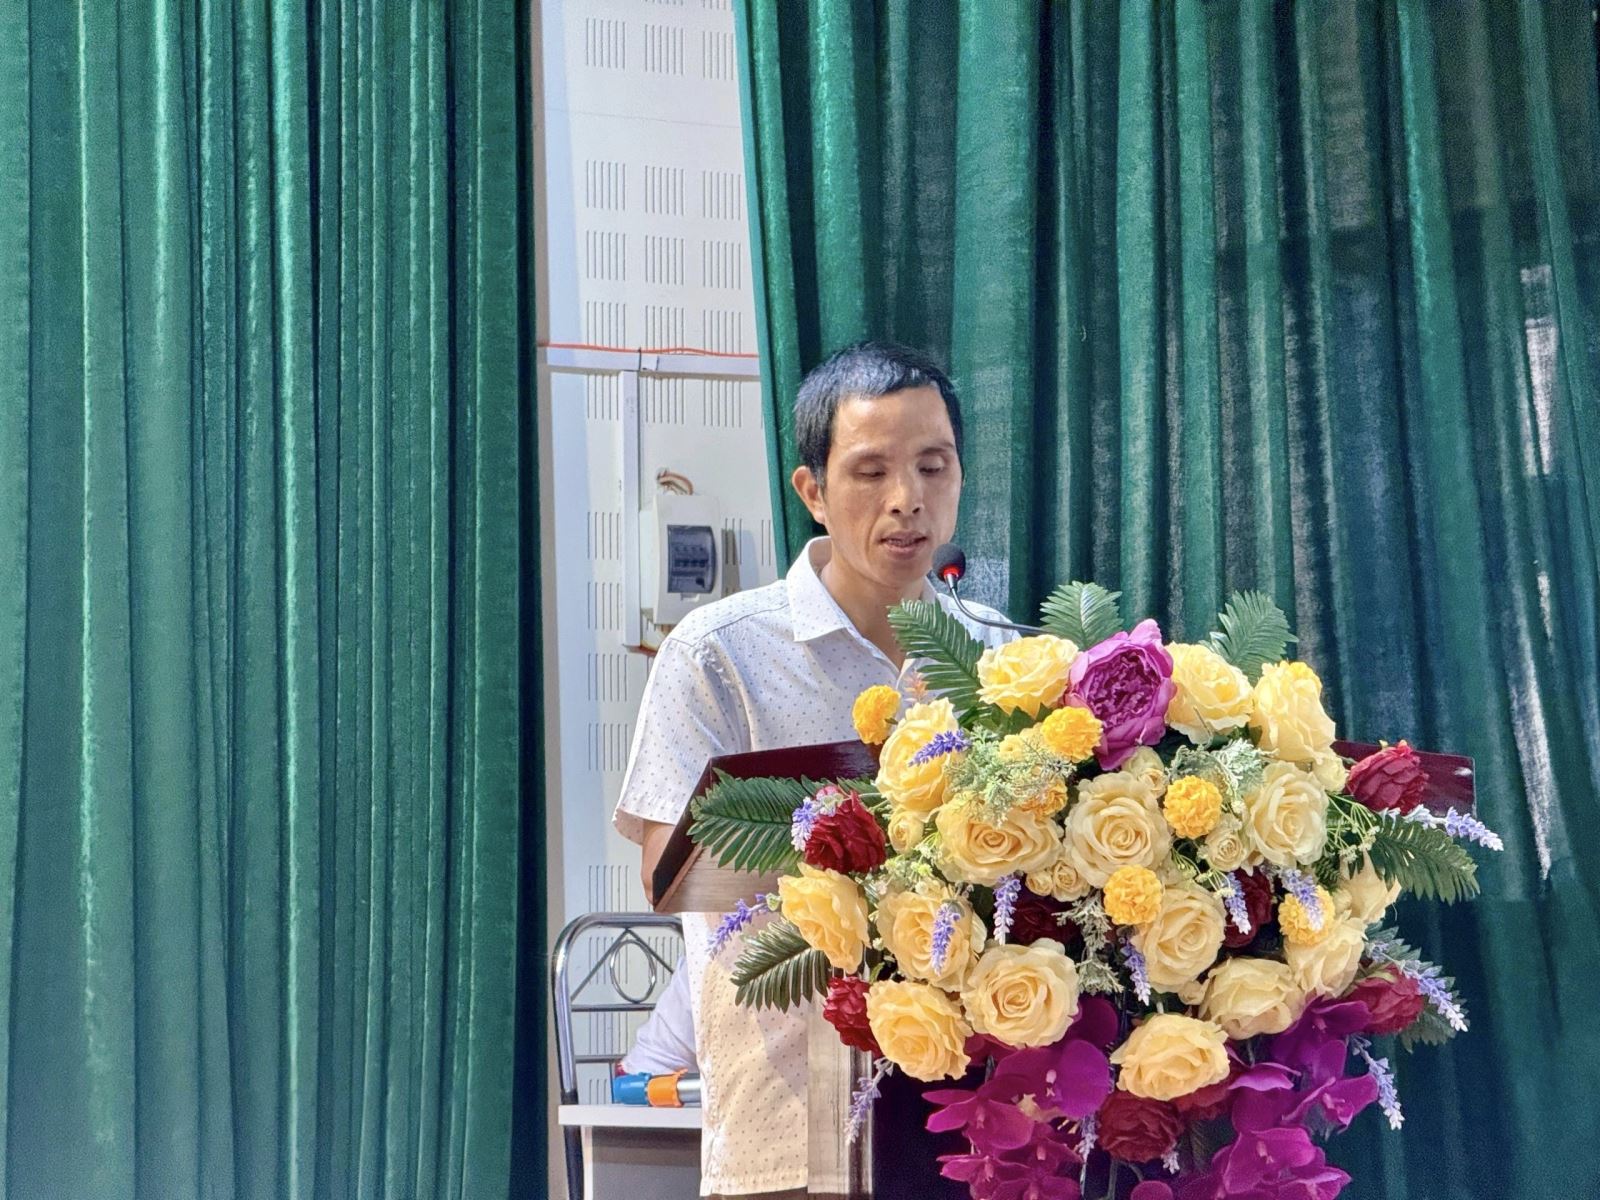 Bệnh nhân Hoàng Văn Nhất - một trong số những bệnh nhân được ghép thận thành công từ người cho chết não tại Bệnh viện Đa khoa tỉnh Thanh Hóa